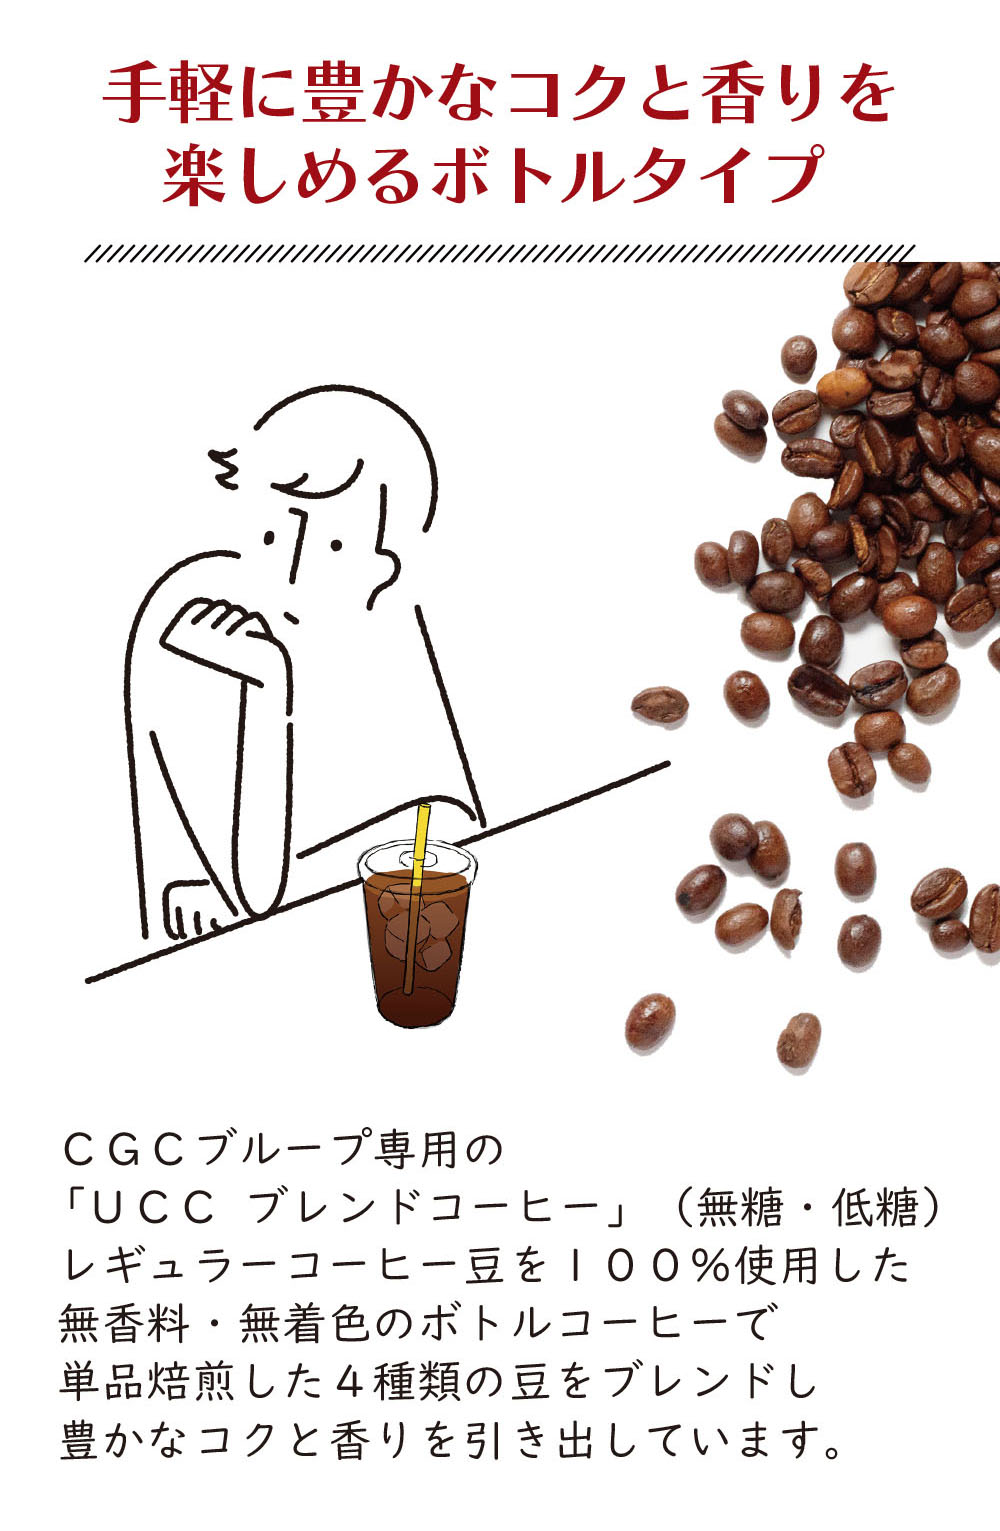 CGC_UCCブレンドコーヒー_無糖・低糖